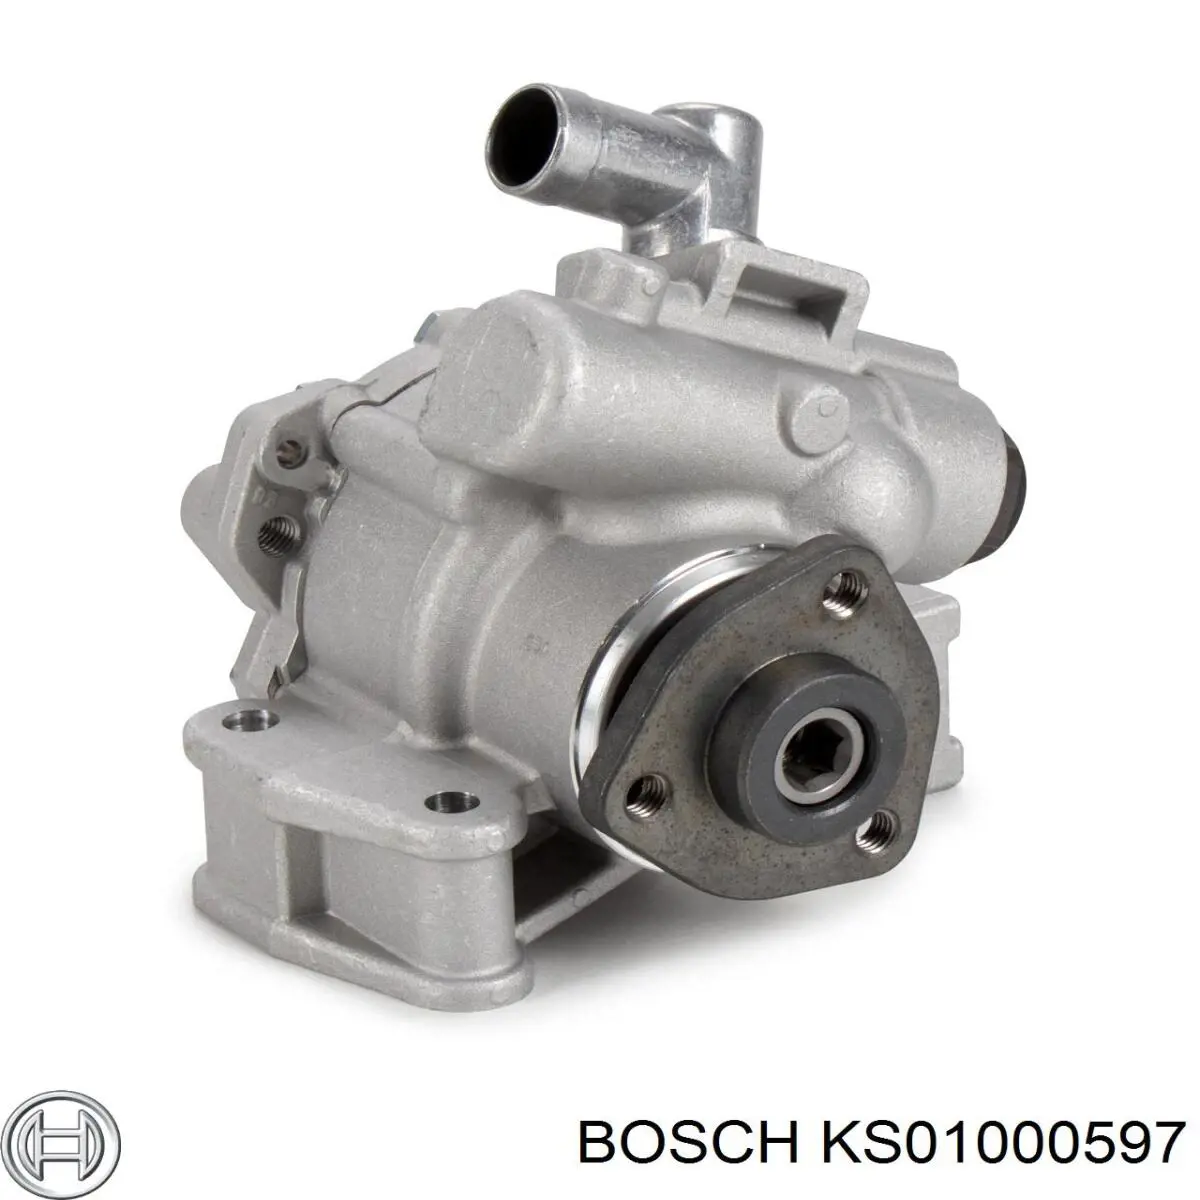 KS01000597 Bosch bomba hidráulica de dirección